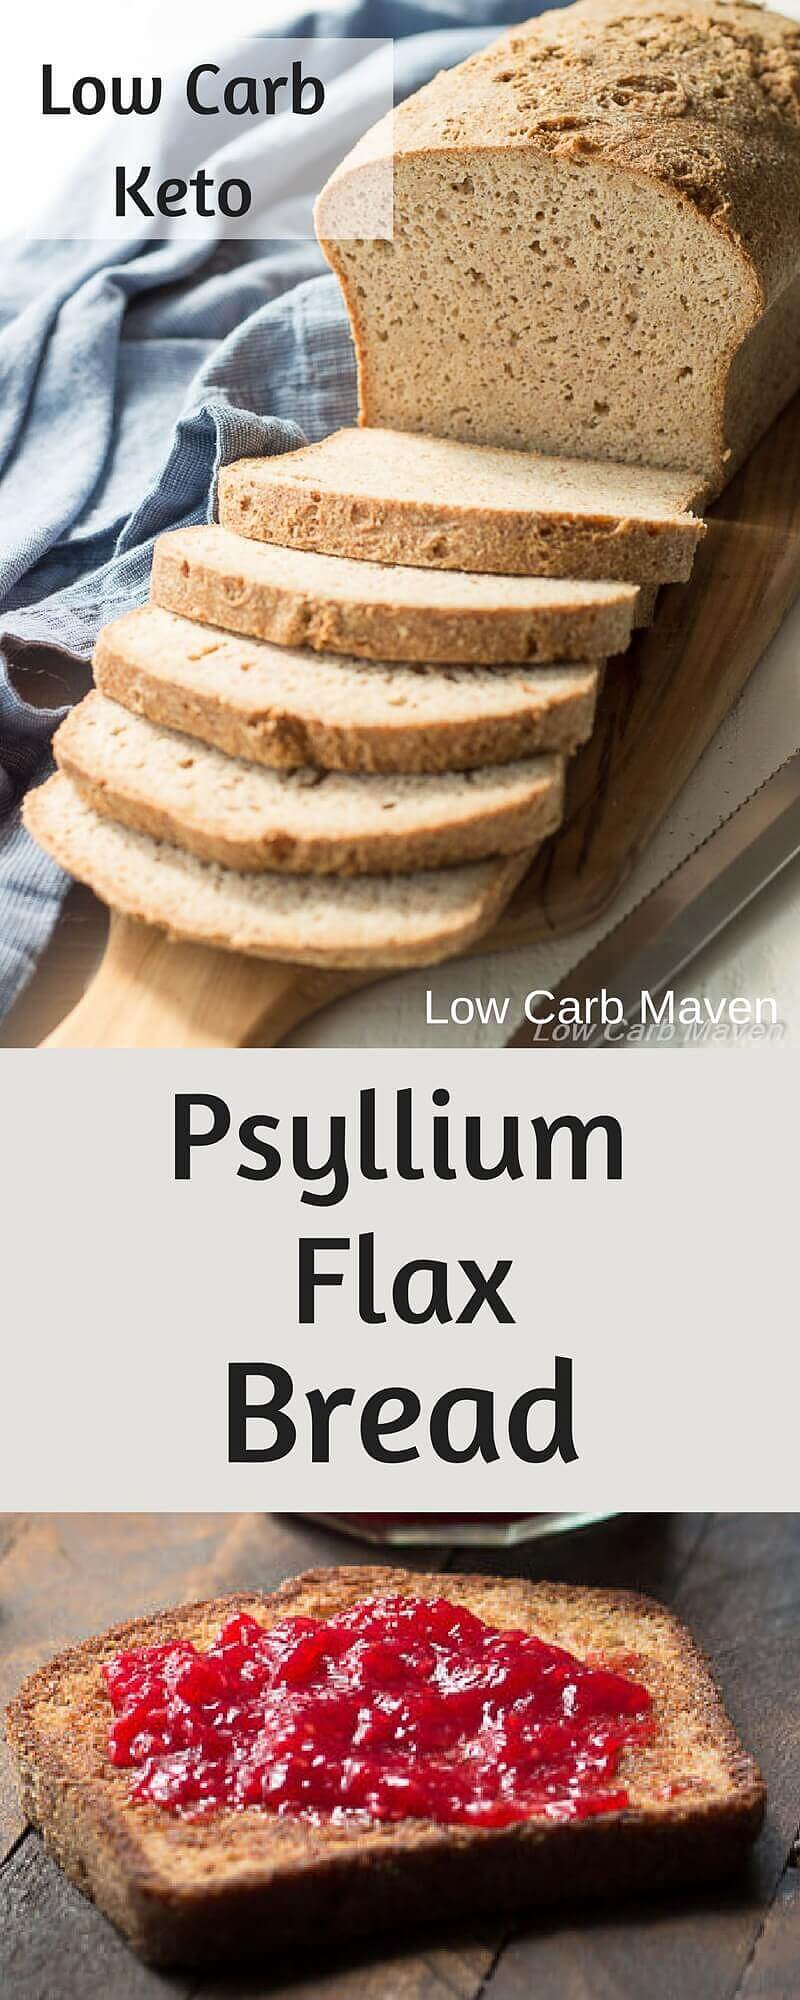 Low Carb Bread Recipe with Psyllium